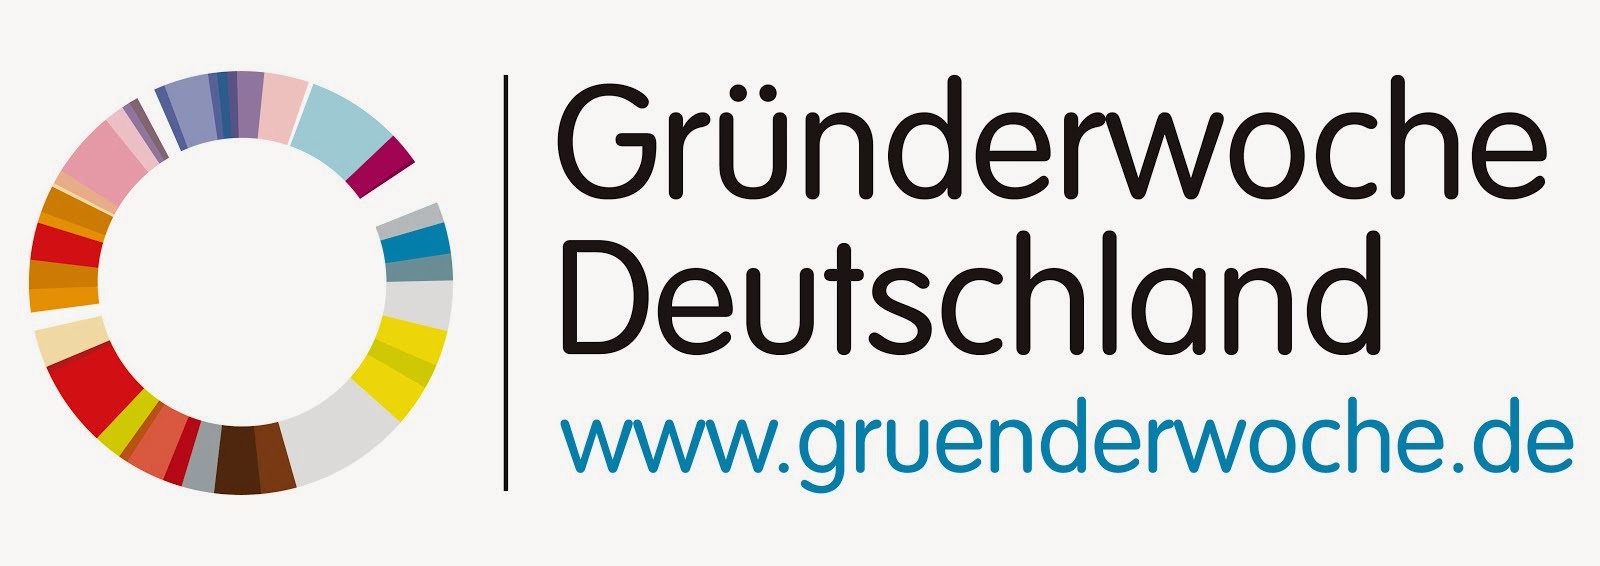 Partner der Gründerwoche Deutschland